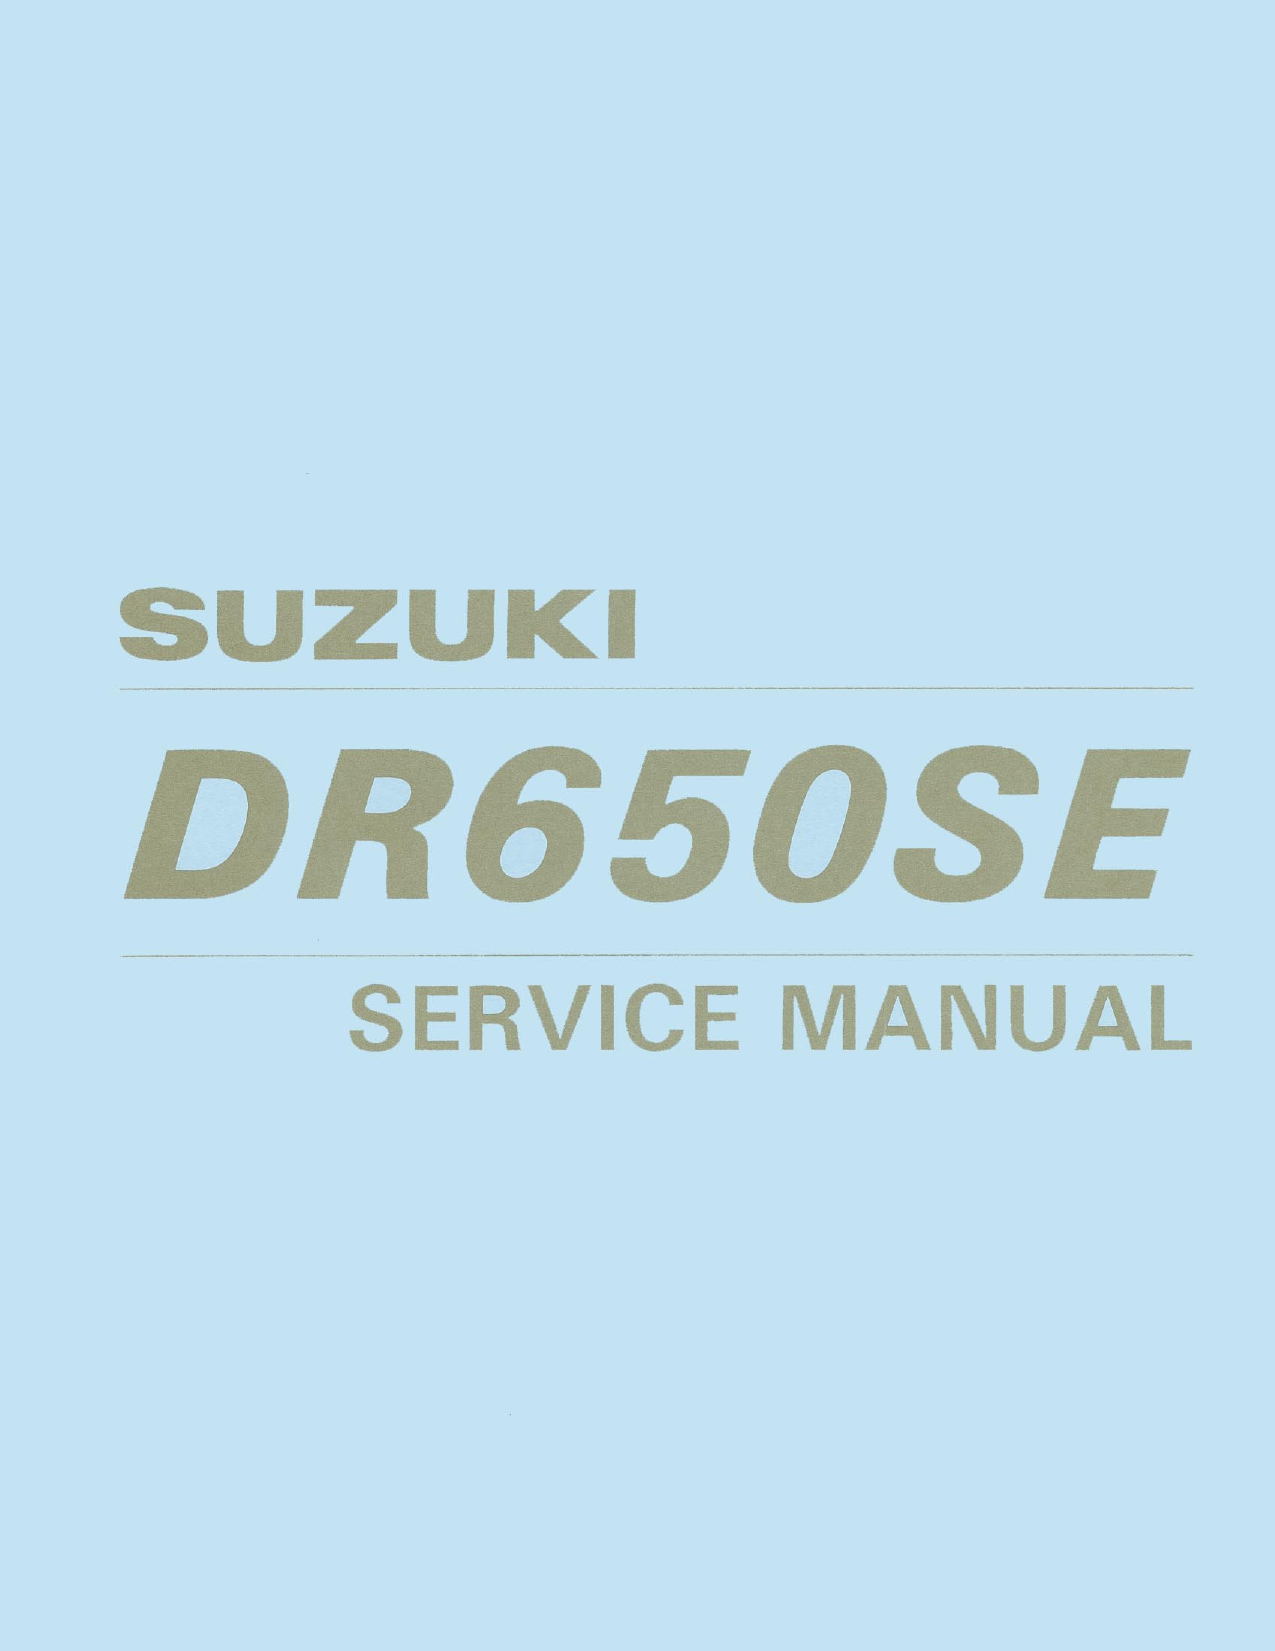 1996-2002 Suzuki DR650SE, DR650 repair and shop manual Preview image 6